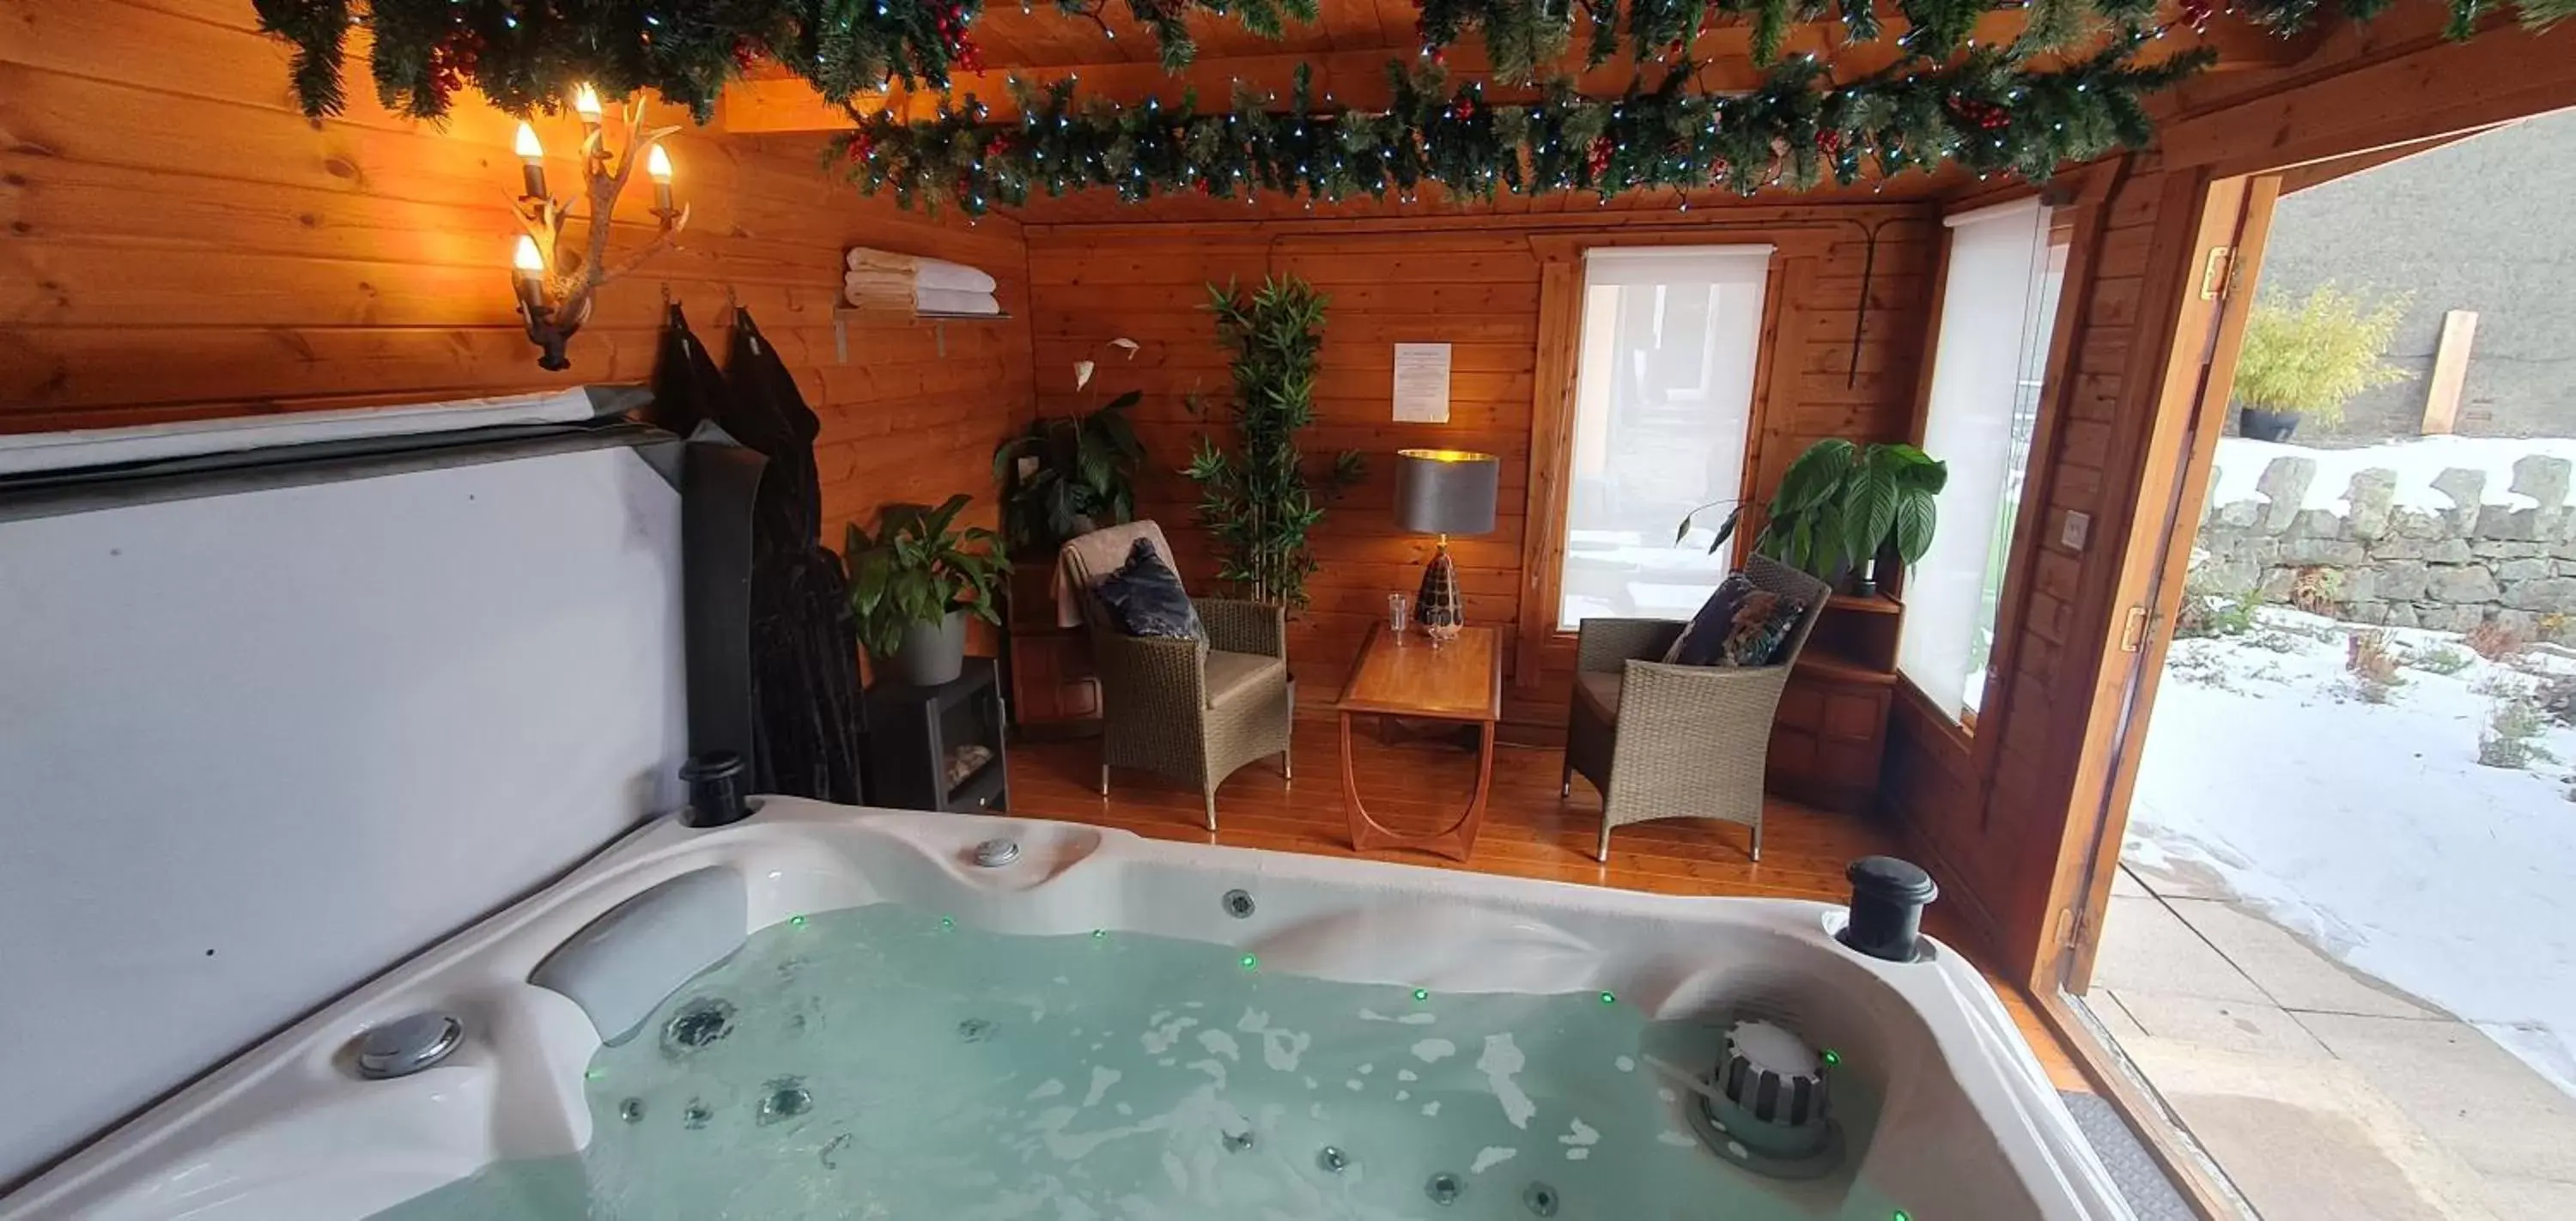 Hot Tub in Cader Suite plus Luxury Hot Tub